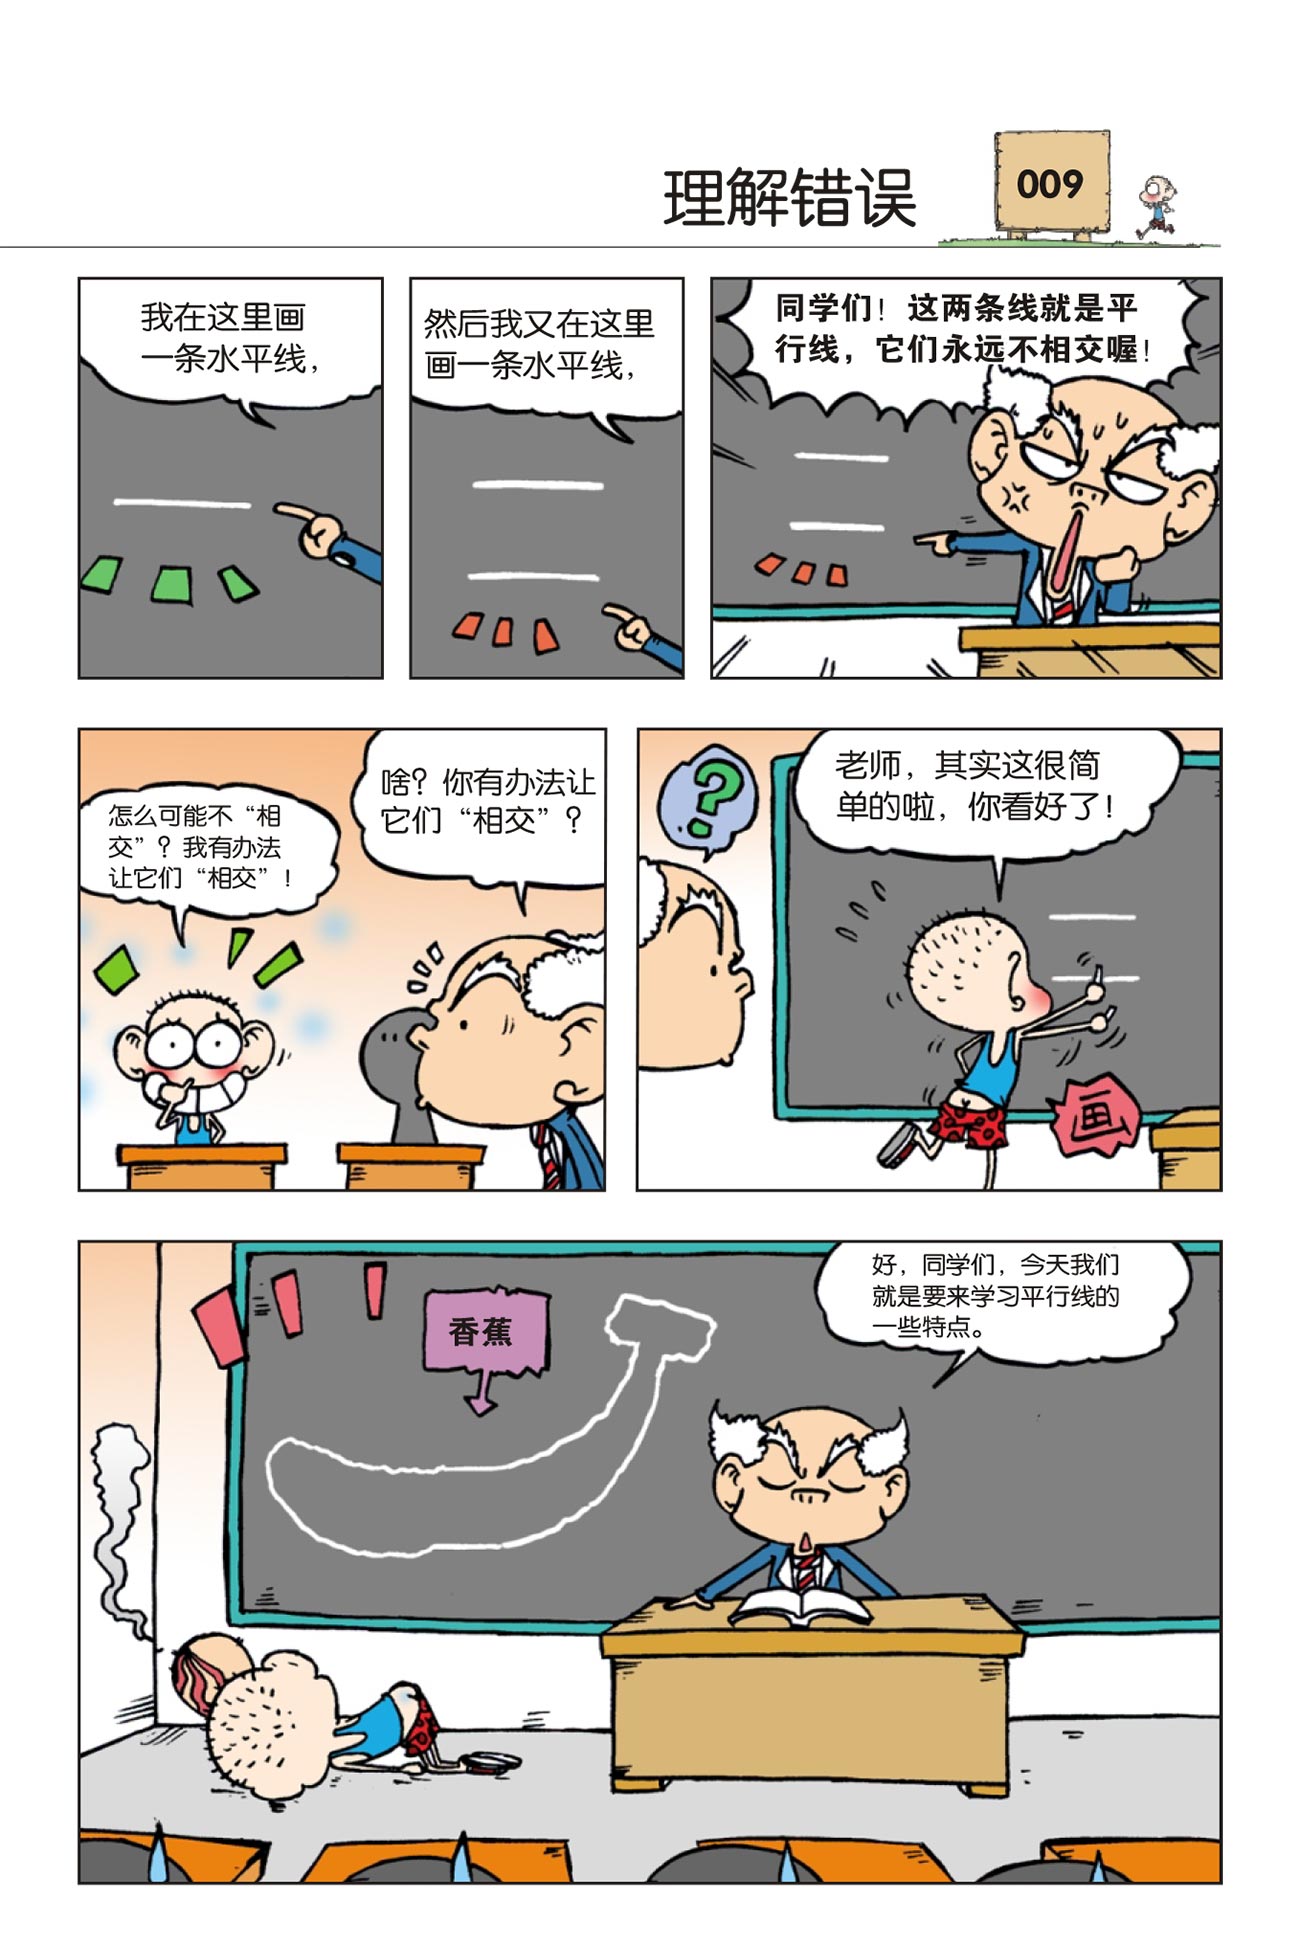 漫画世界幽默系列：爆笑校园18 – 玲子网络书房 Lingzi Online Bookstore